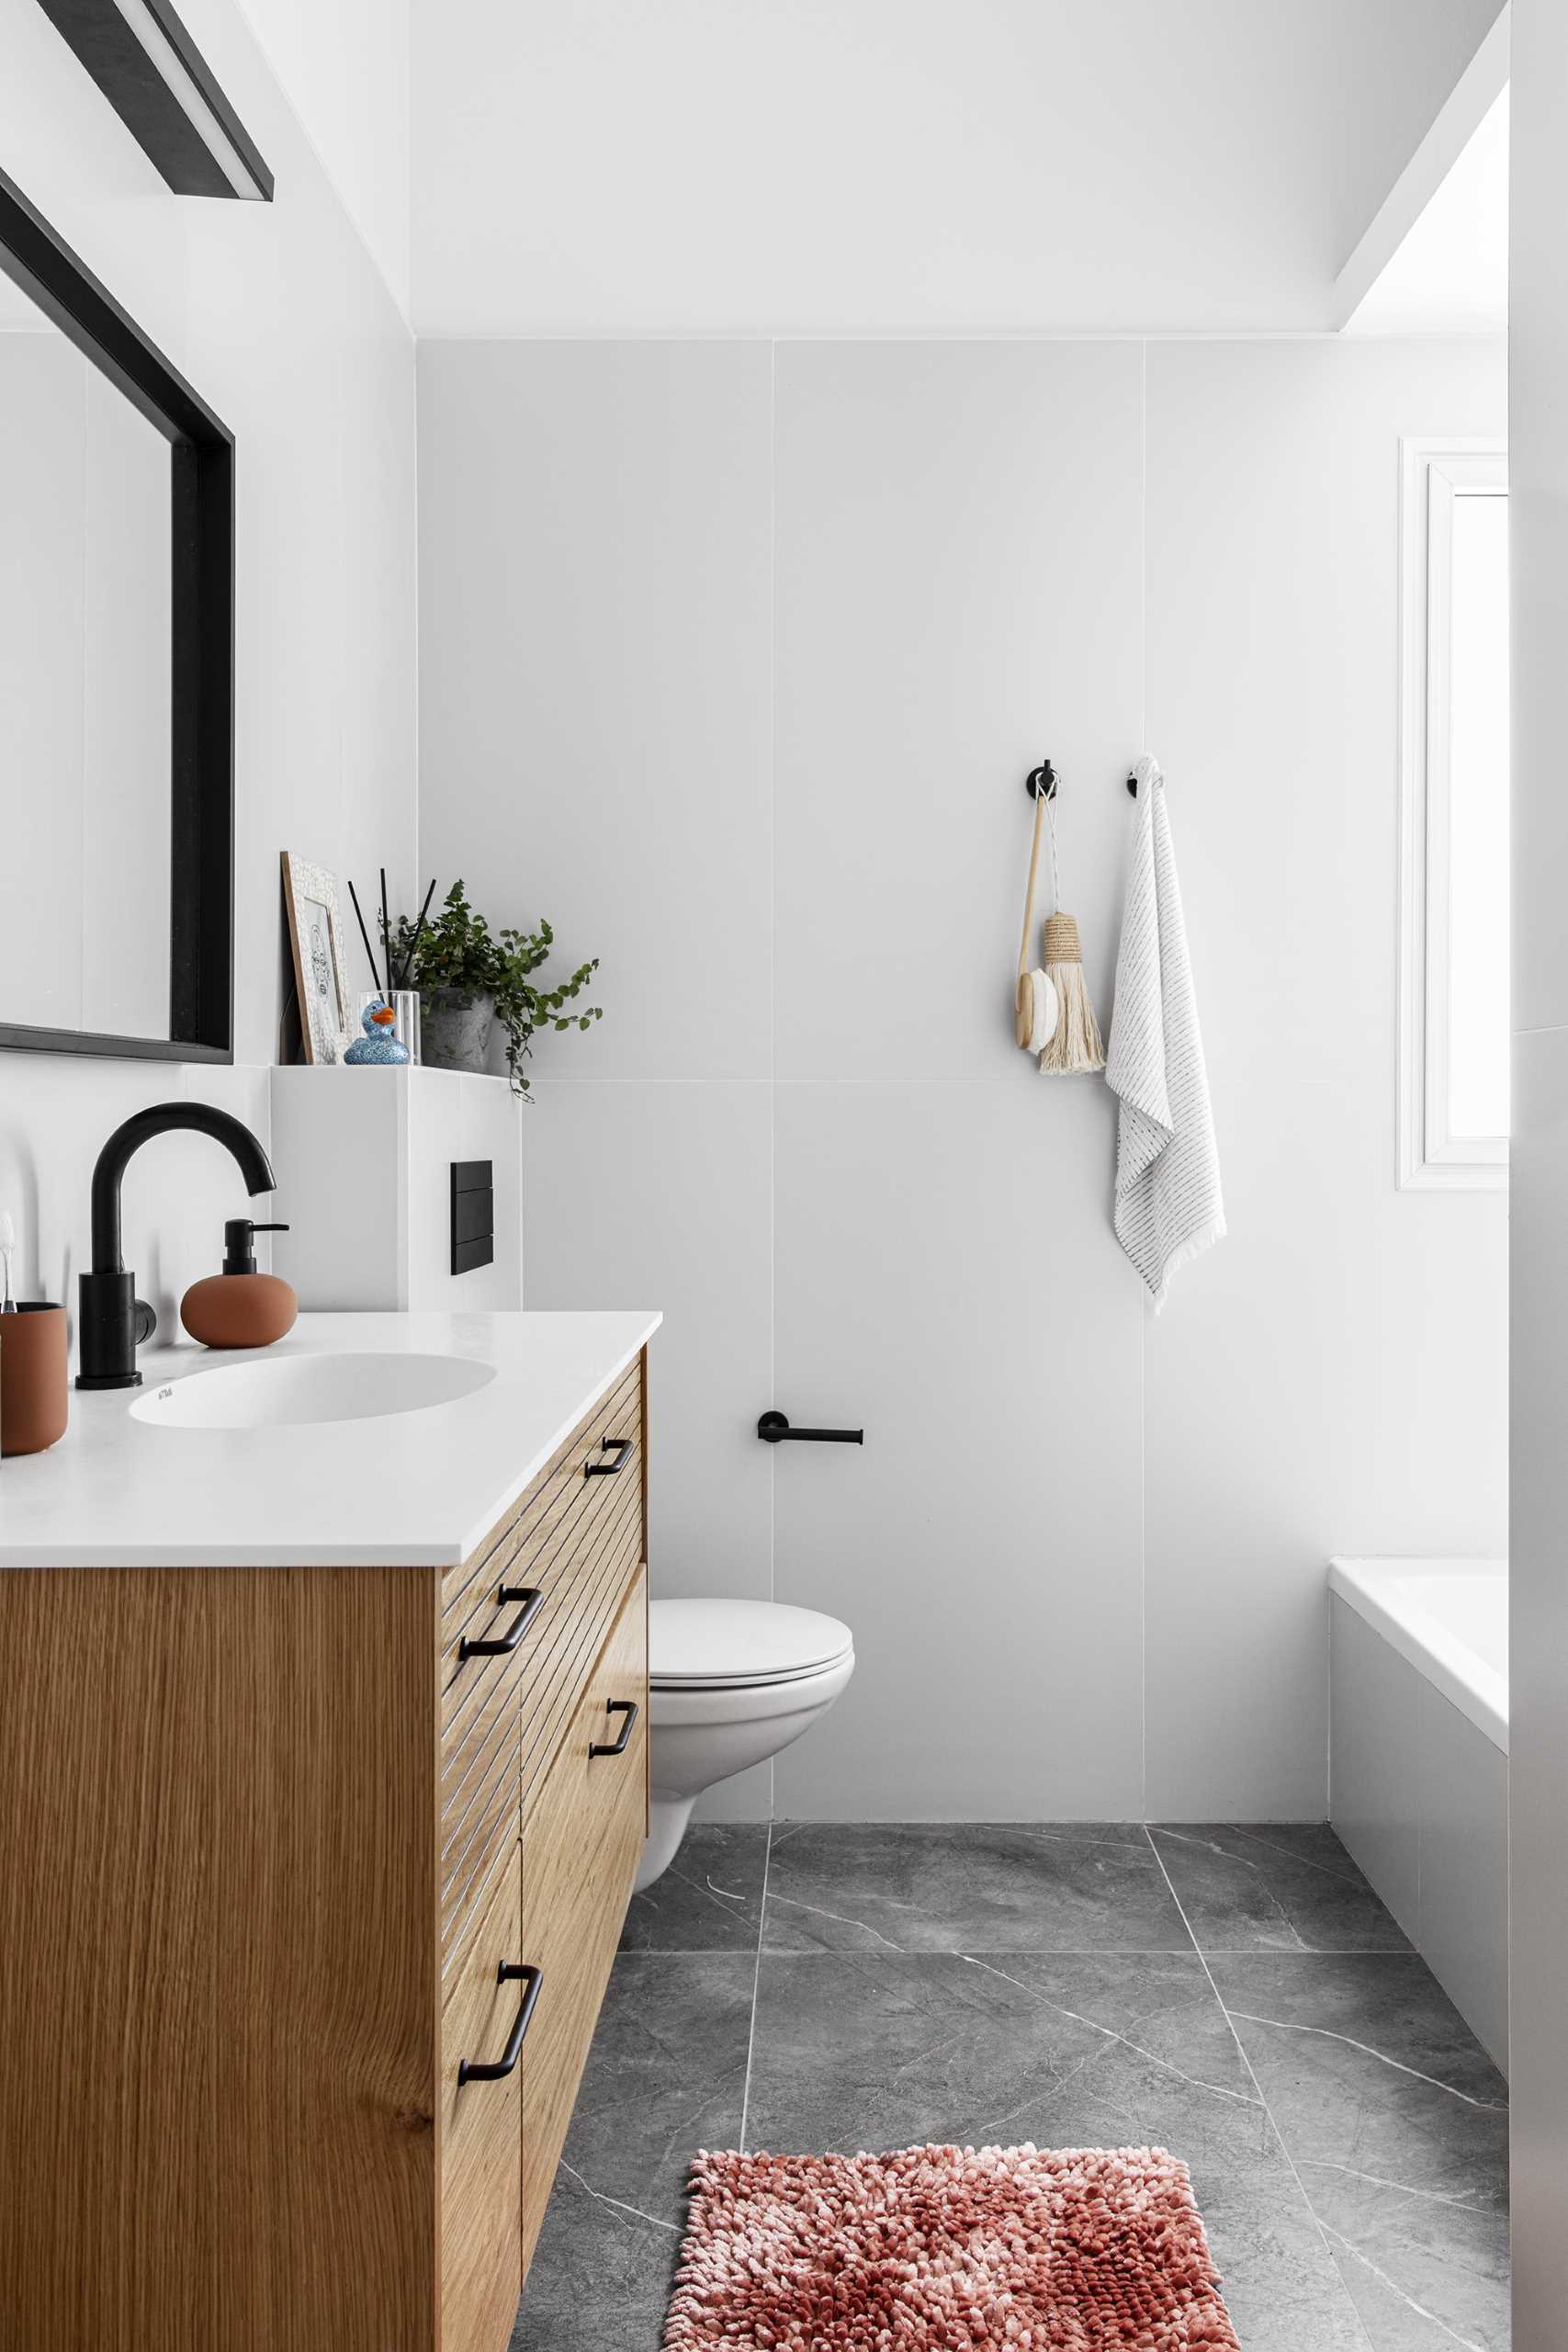 Neste banheiro moderno, há uma pia de madeira flutuante, um espelho quadrado de moldura preta, um par de ganchos de parede, azulejos de grande formato e um combo banheira/chuveiro.  Escondidas da vista estão as máquinas de lavar.